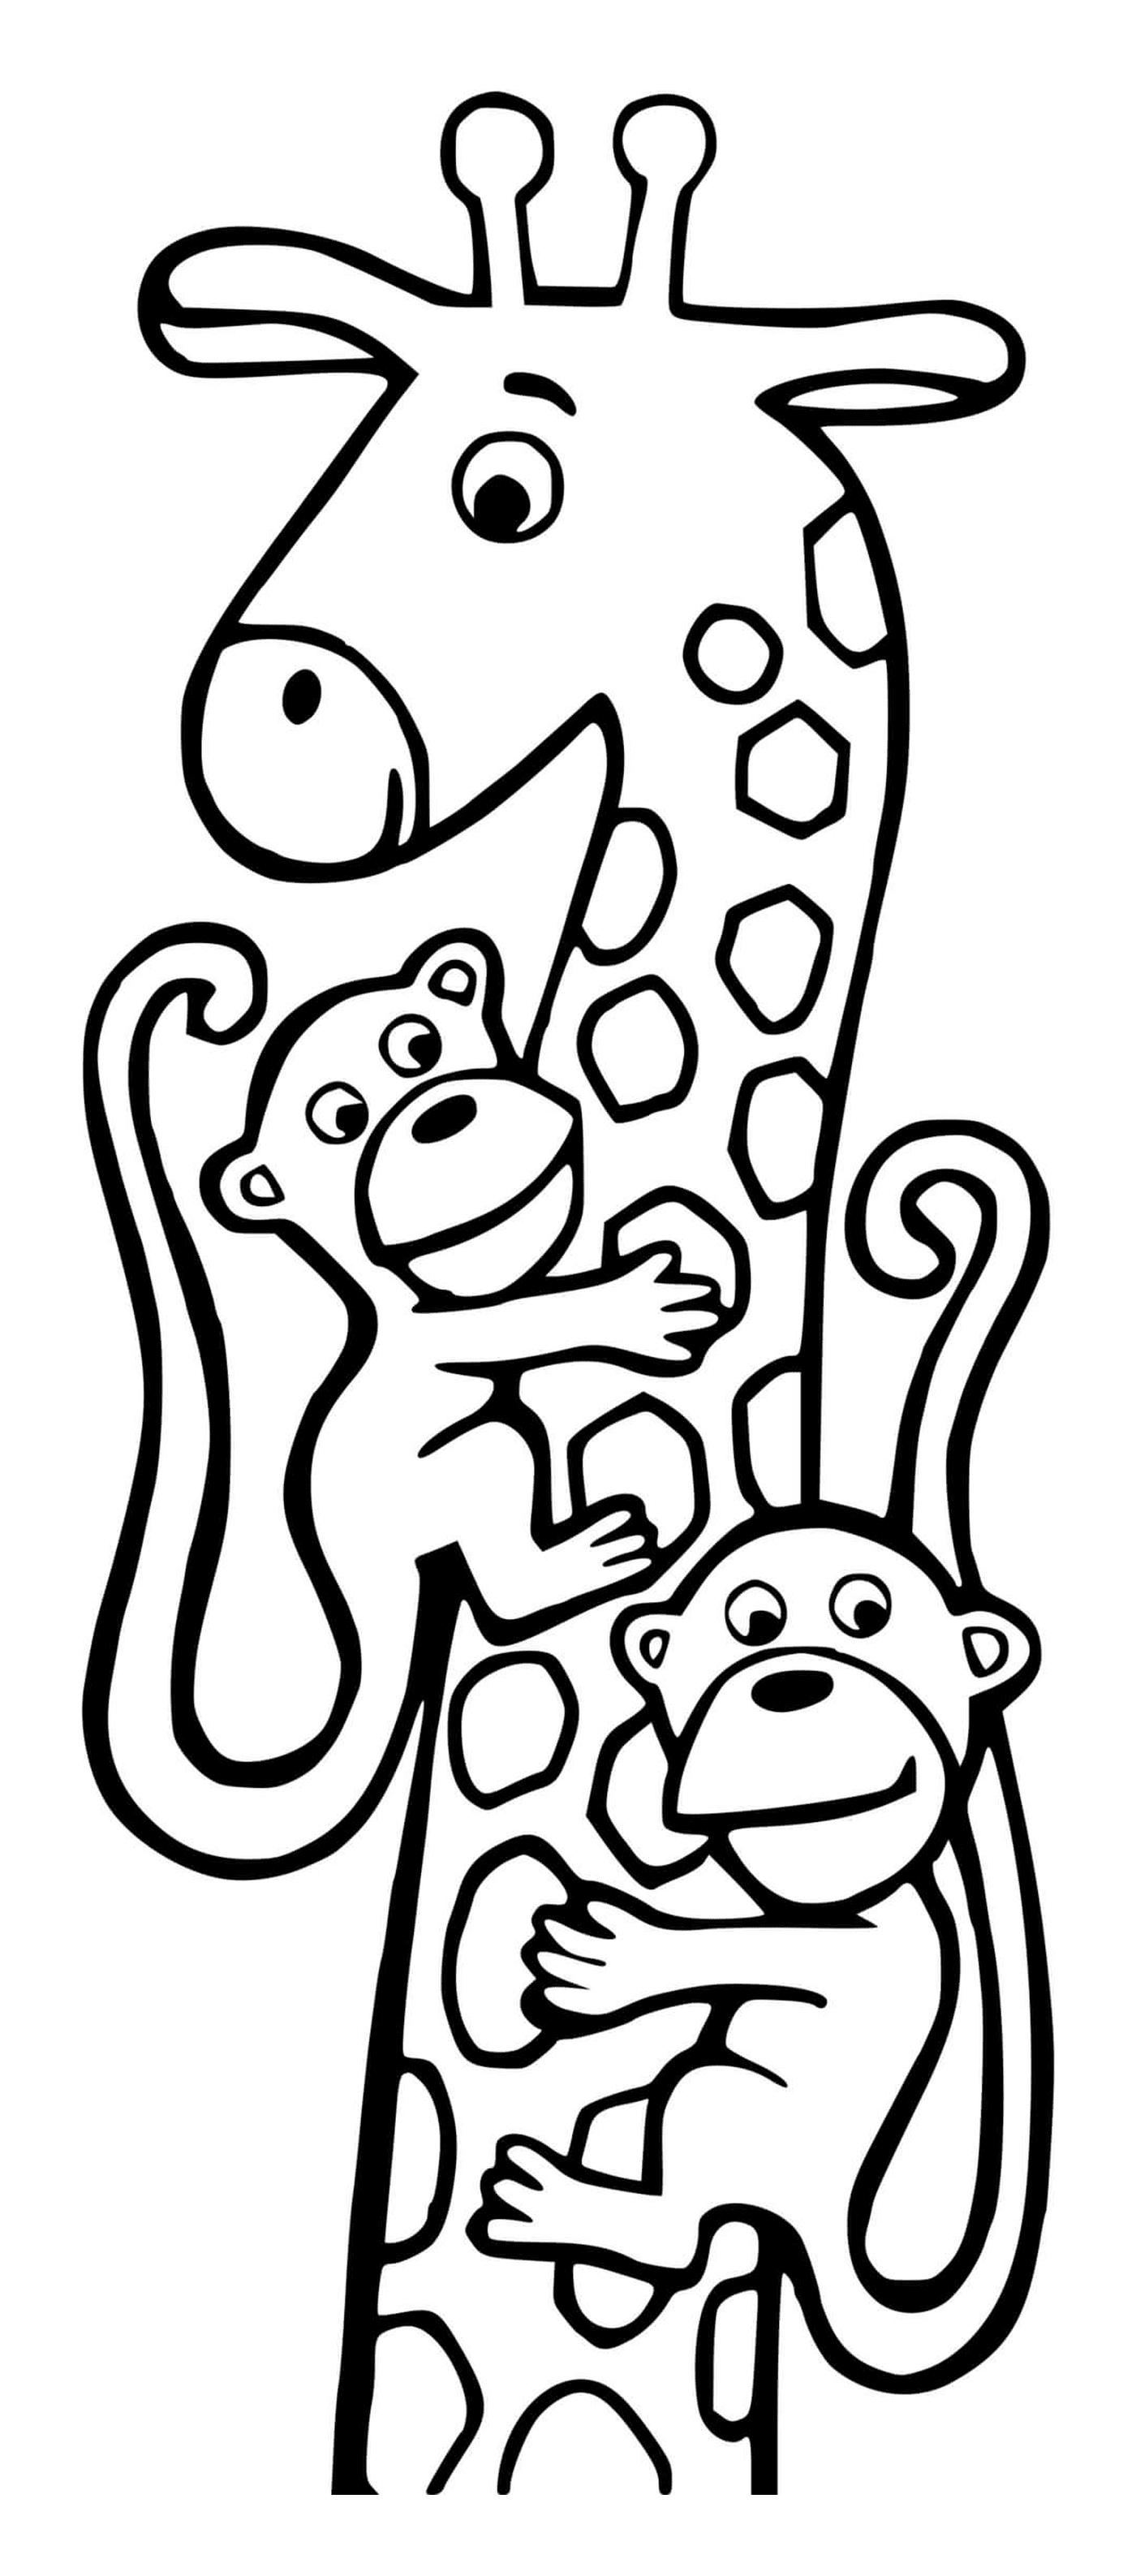  吉拉菲和两只猴子 